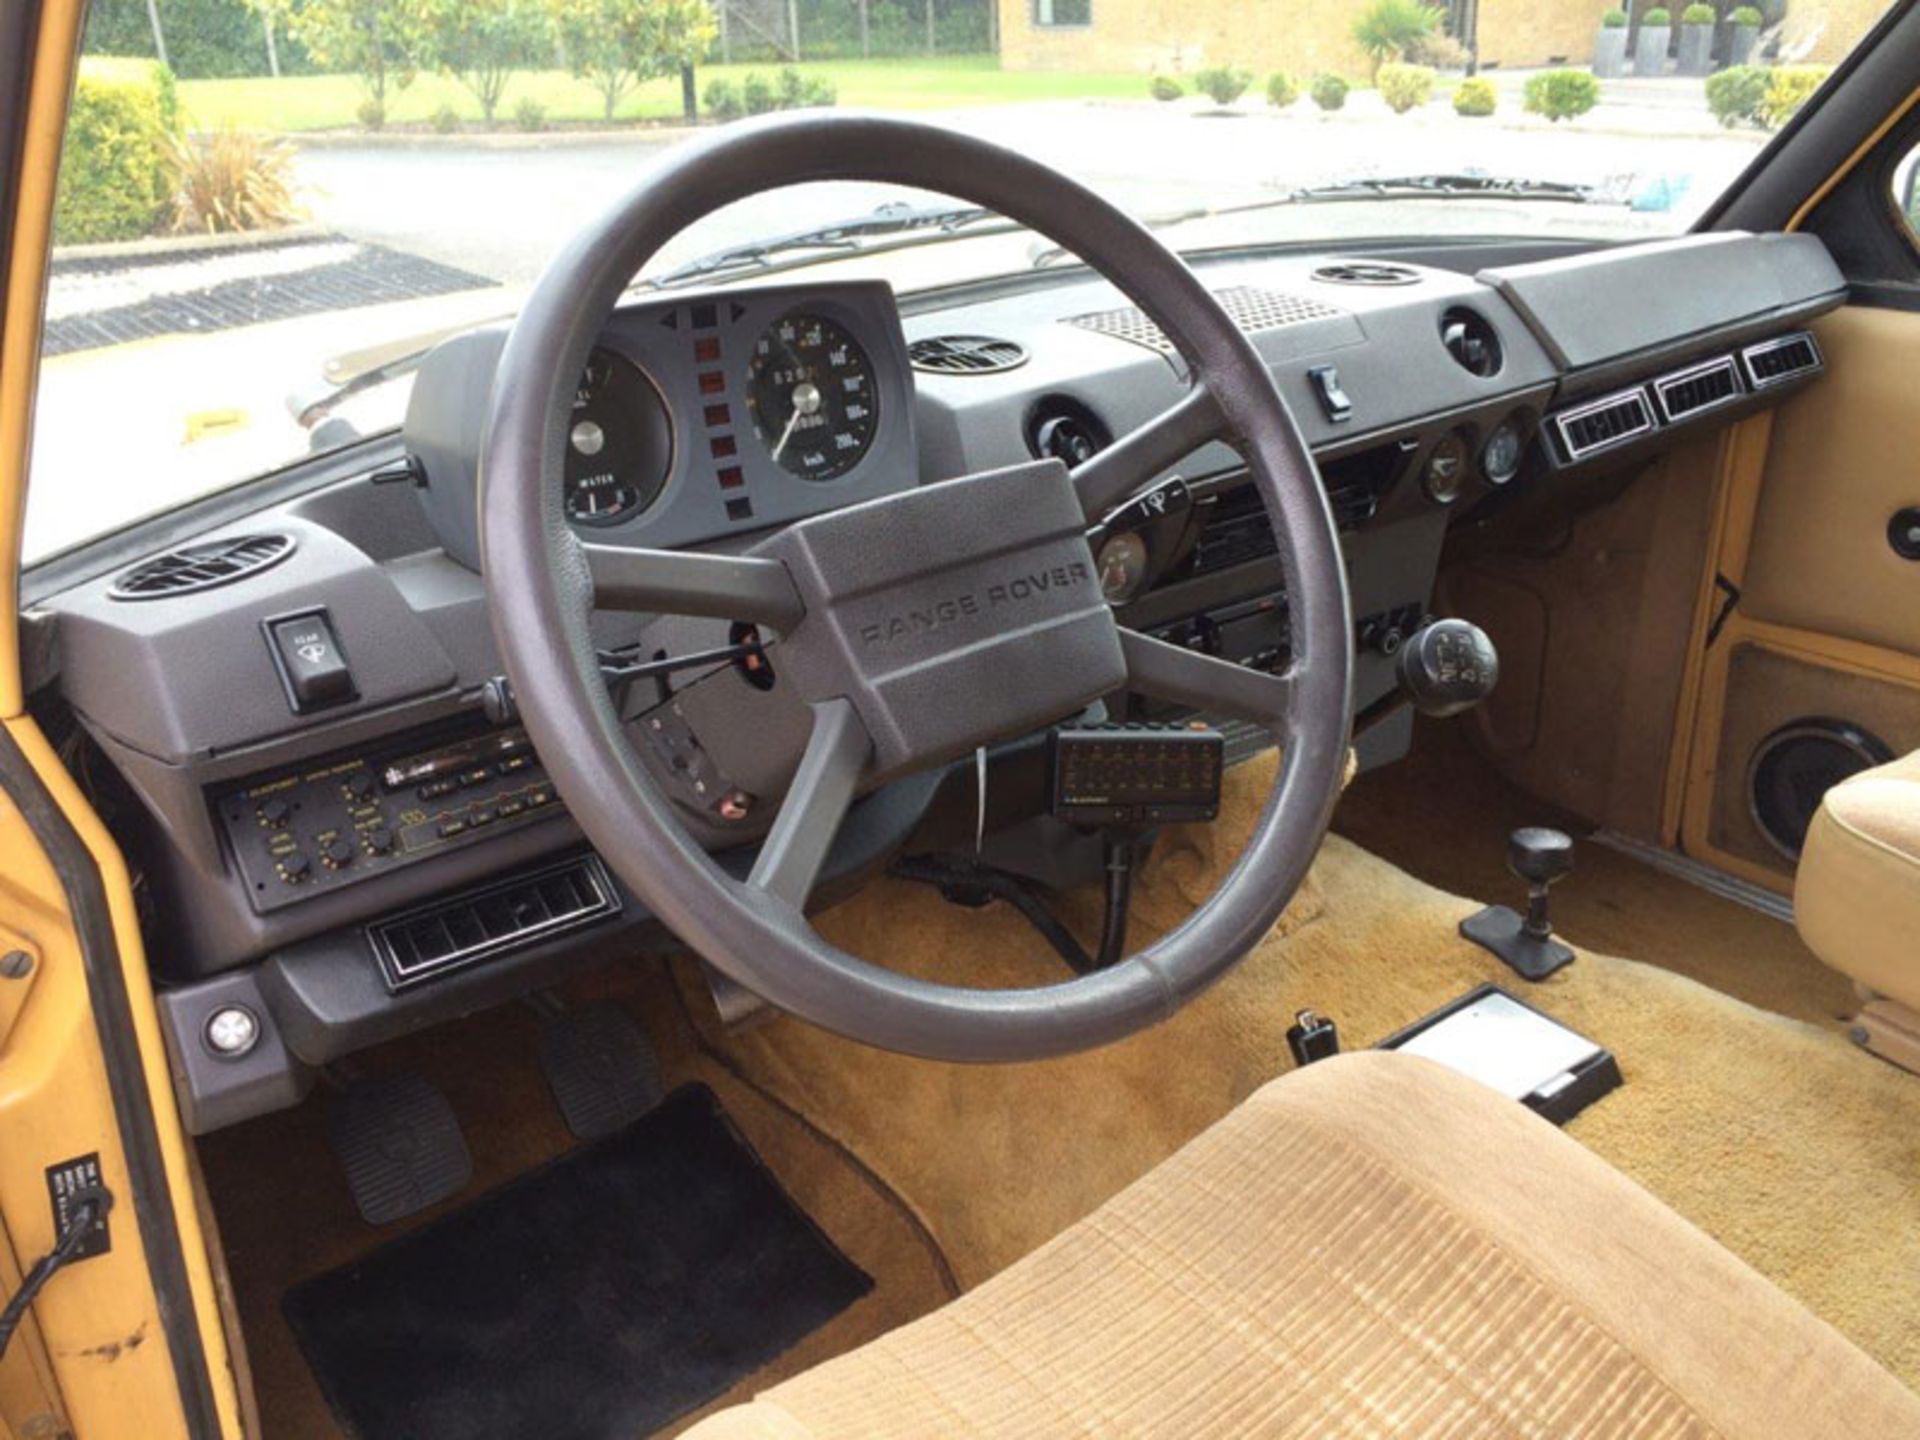 1982 Range Rover 'Two Door' - Image 4 of 8